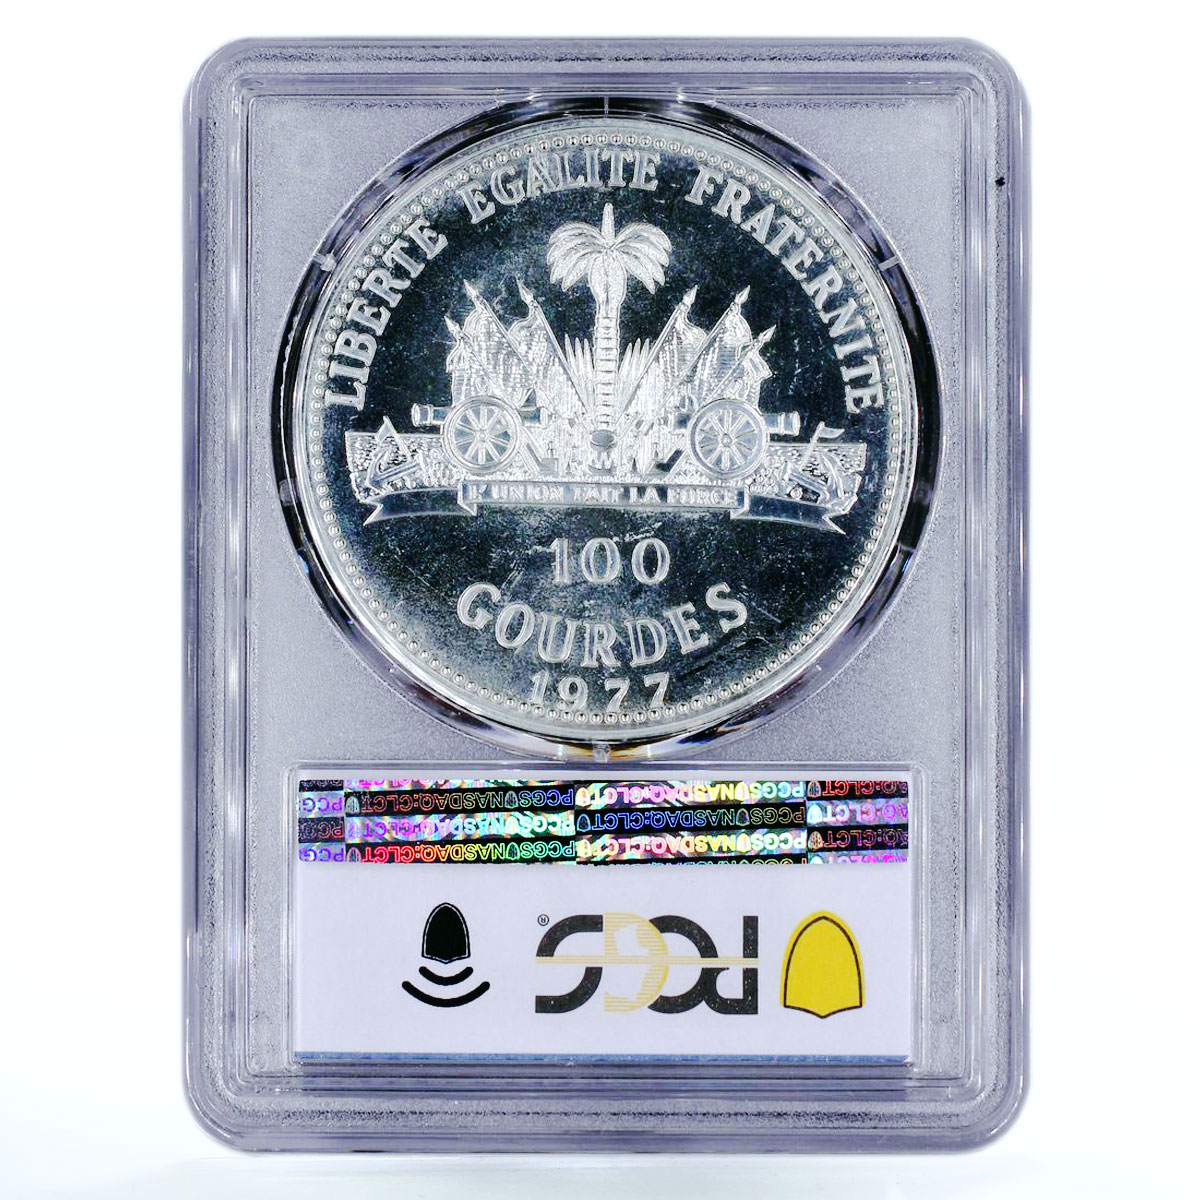 Haiti 100 Gourdes Sadat and Begin Peace Talks MS66 PCGS silver coin 1977